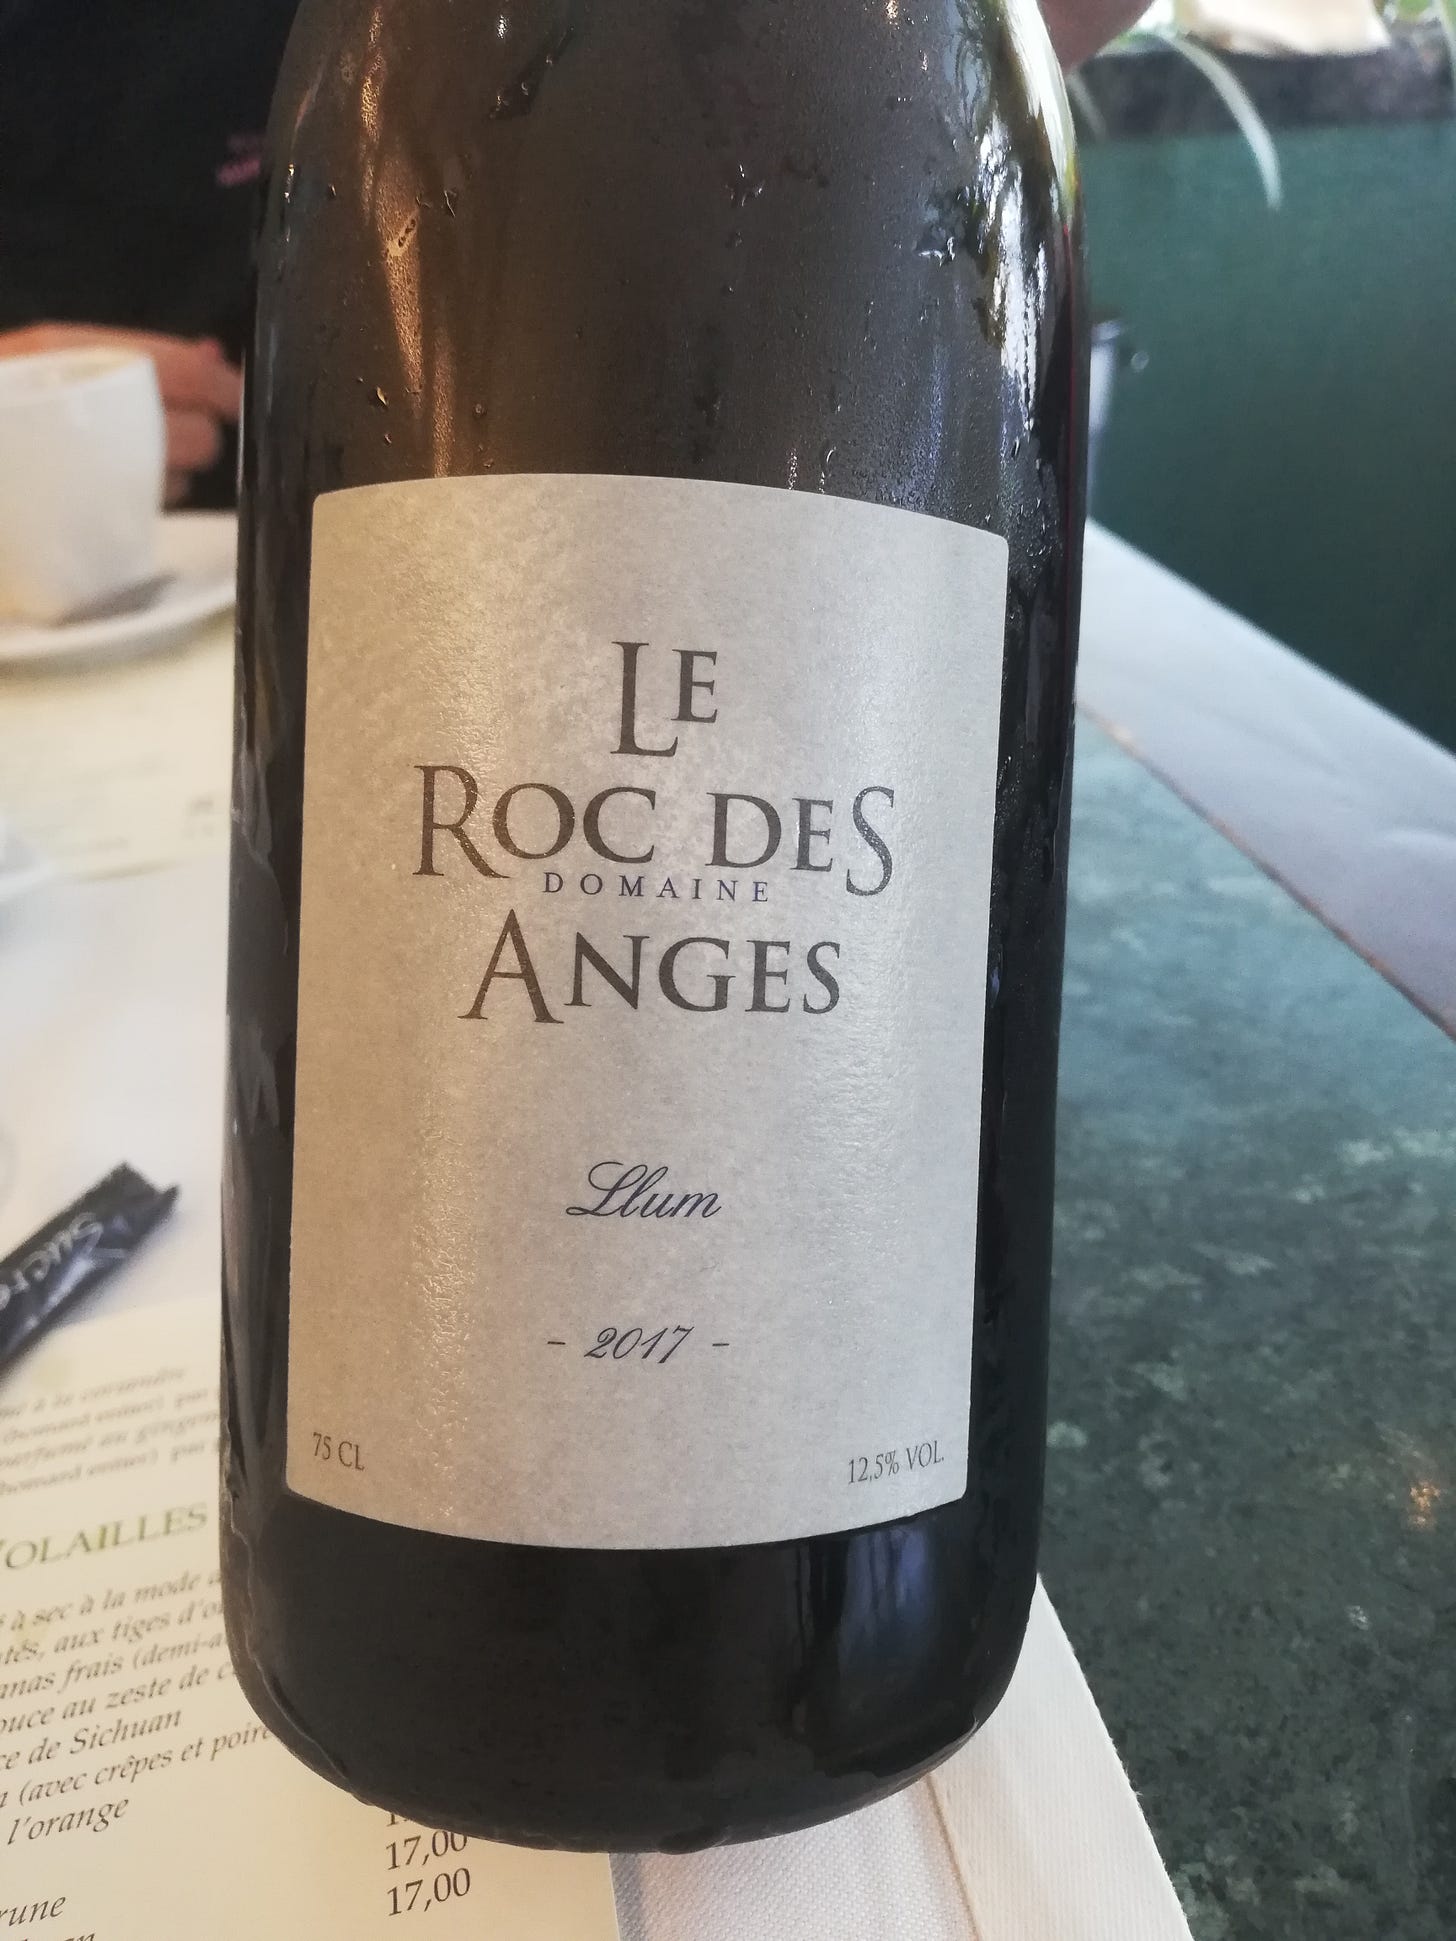 bouteille de Llum, le Roc des anges 2017, vin blanc